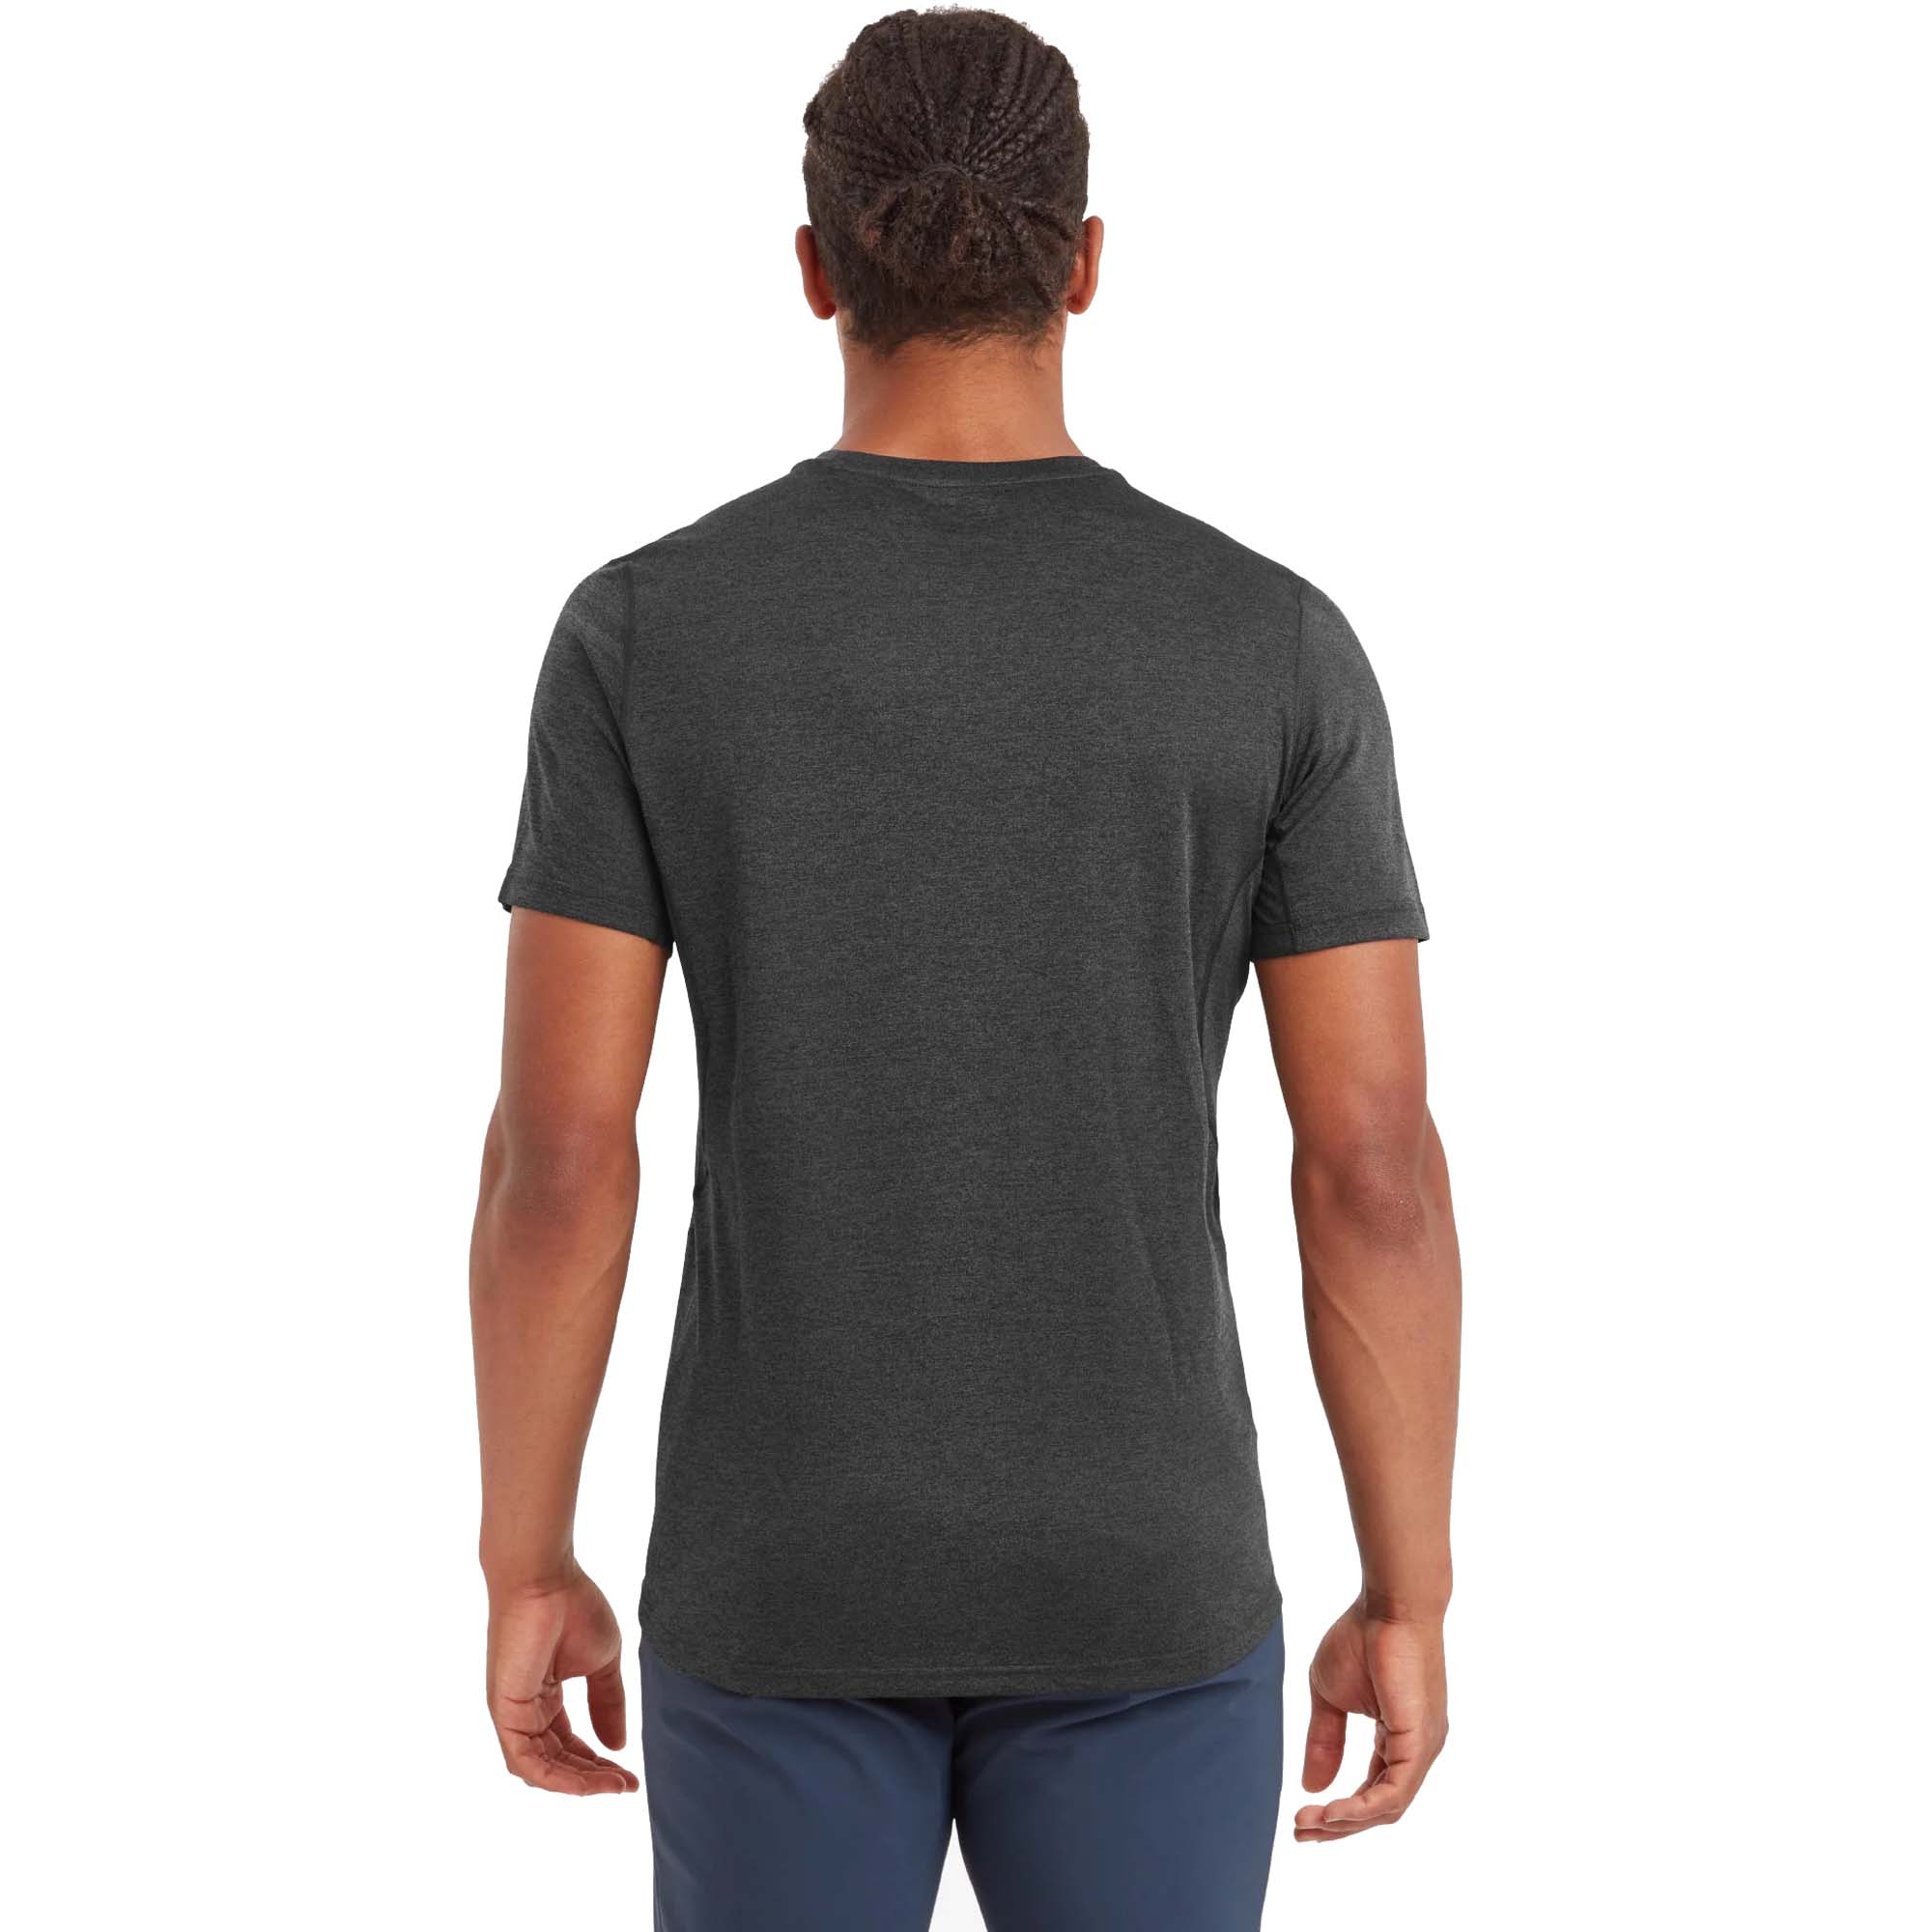 Montane Dart Technical Short Sleeve T-Shirt